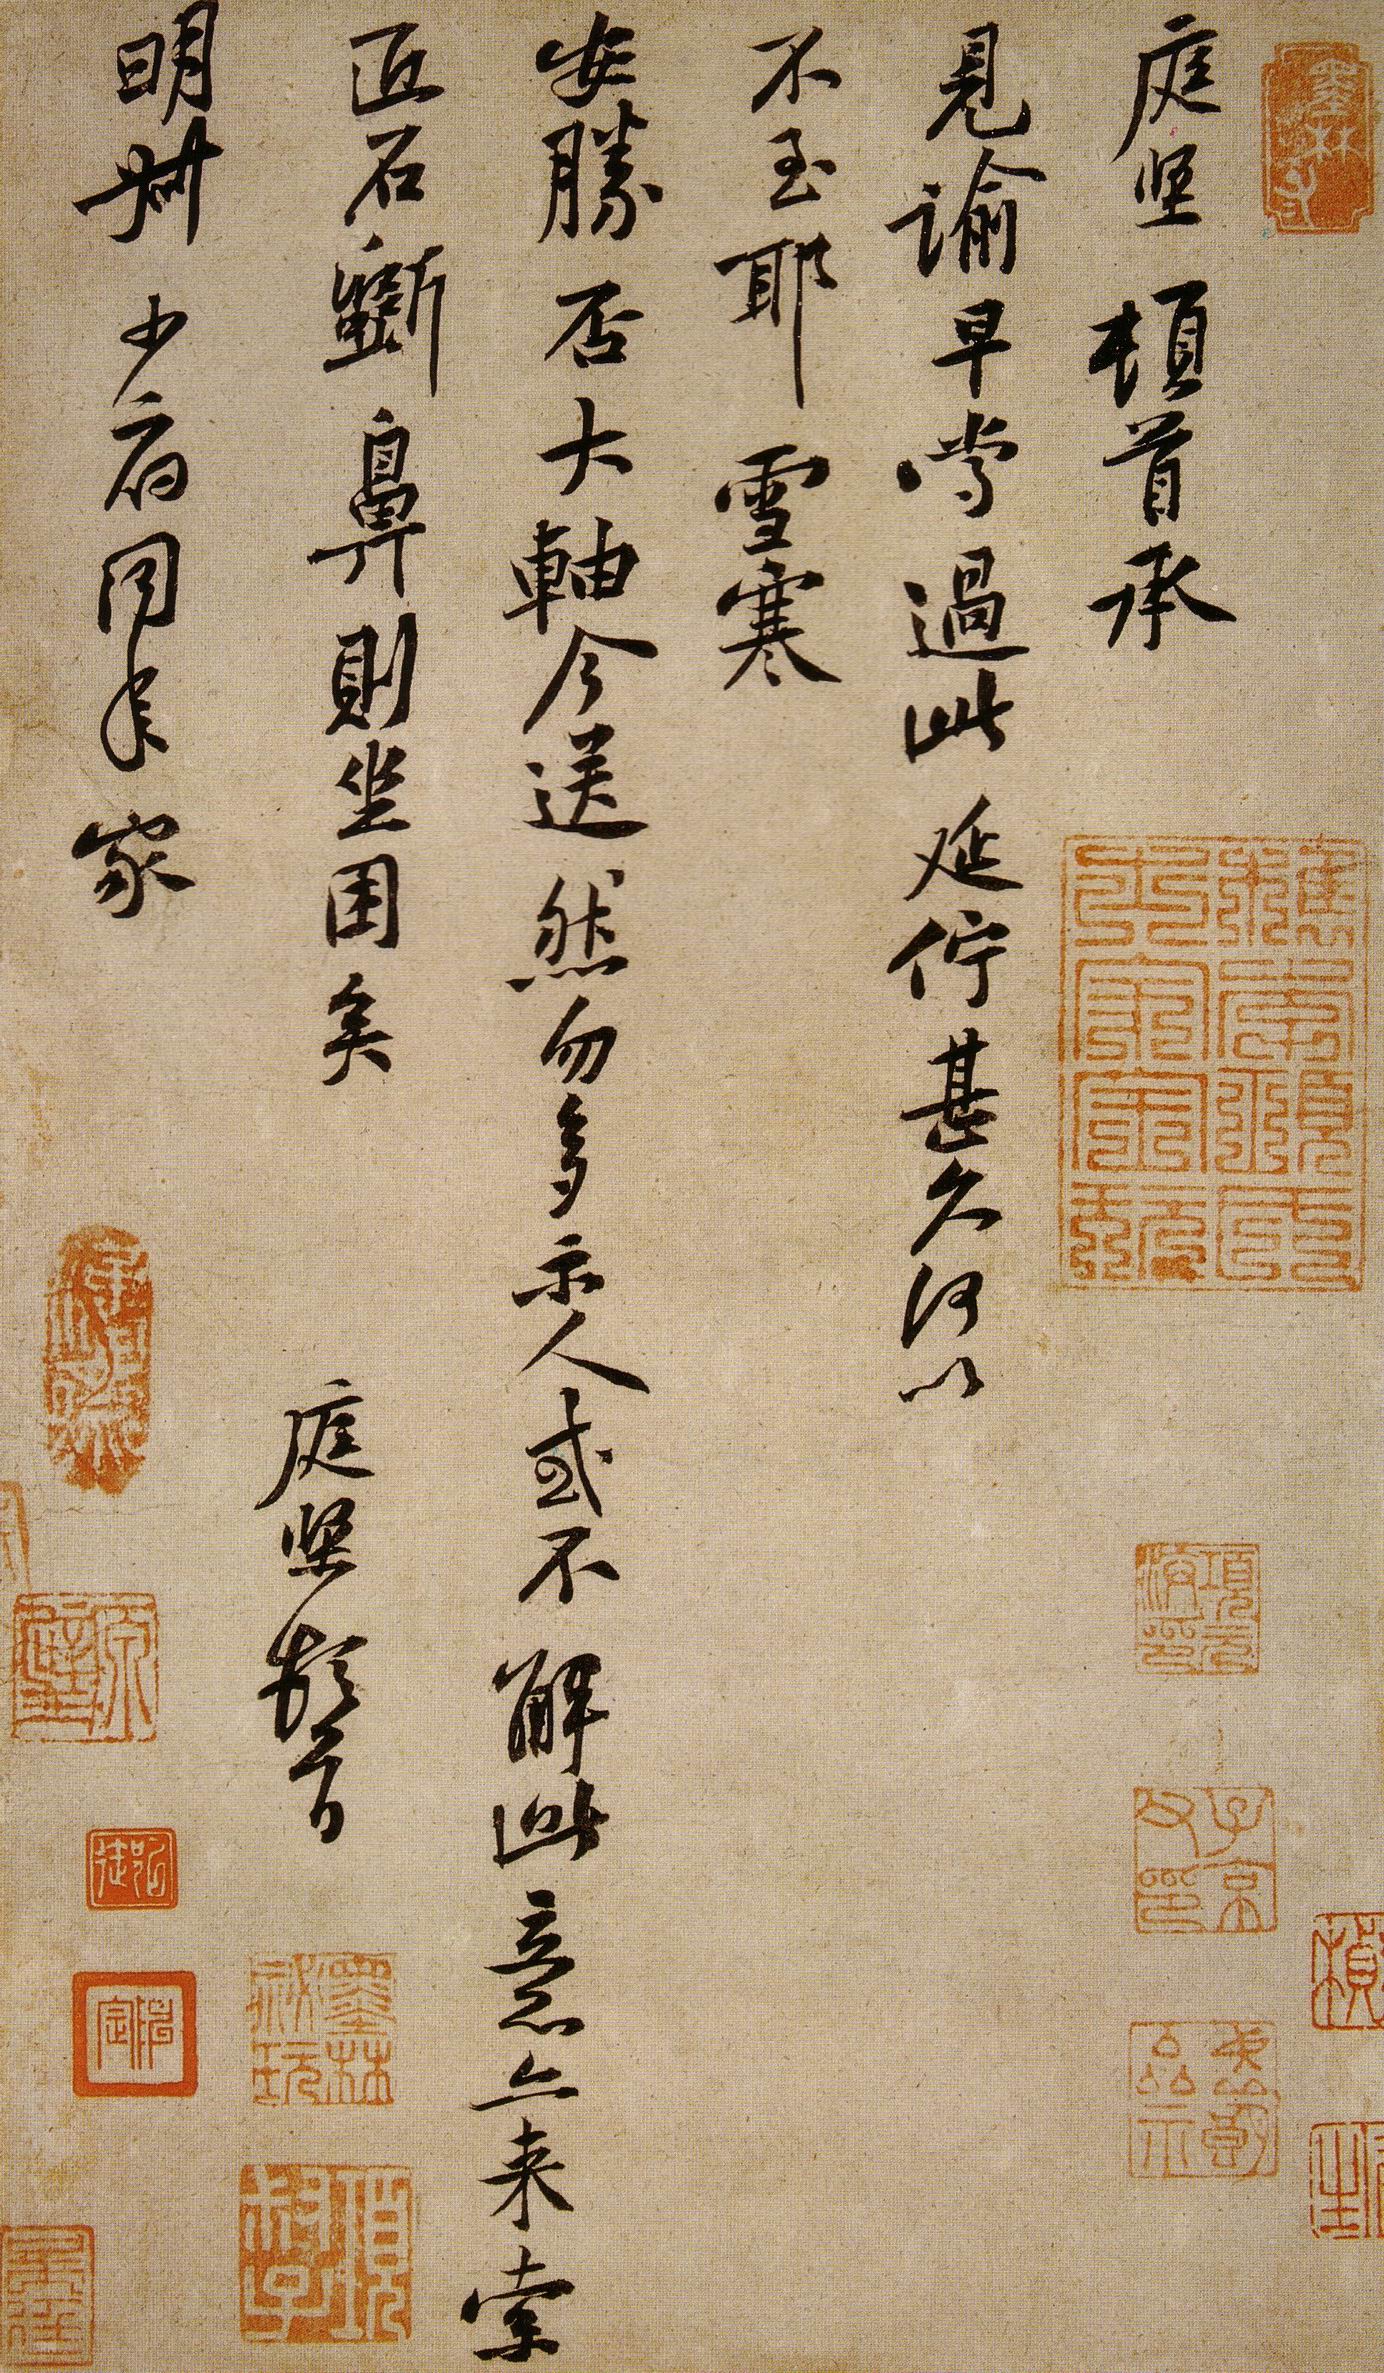 黄庭坚《雪寒帖》-台北故宫博物院藏(图1)